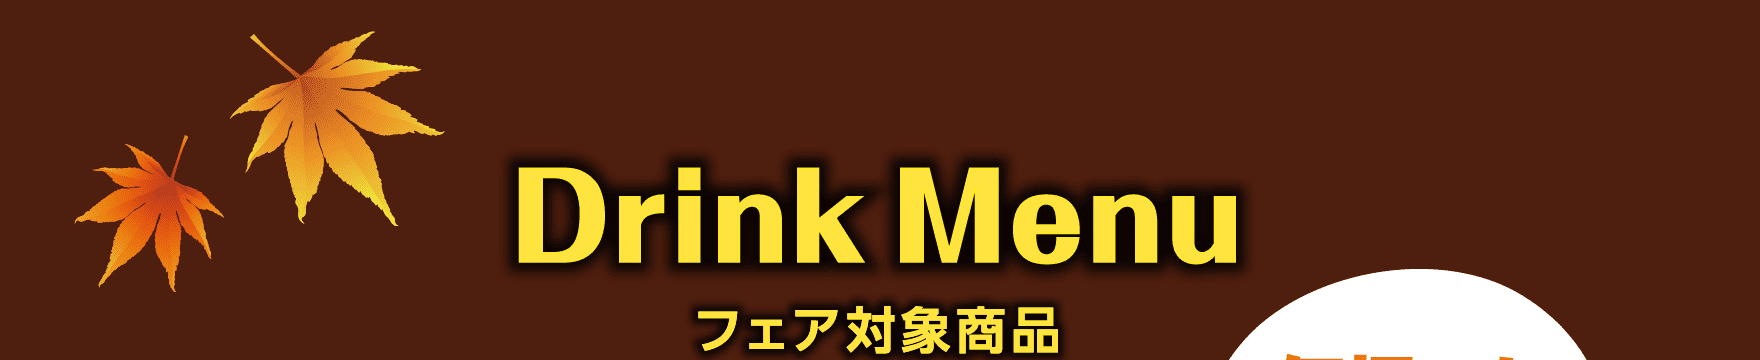 Drink Menu フェア対象商品